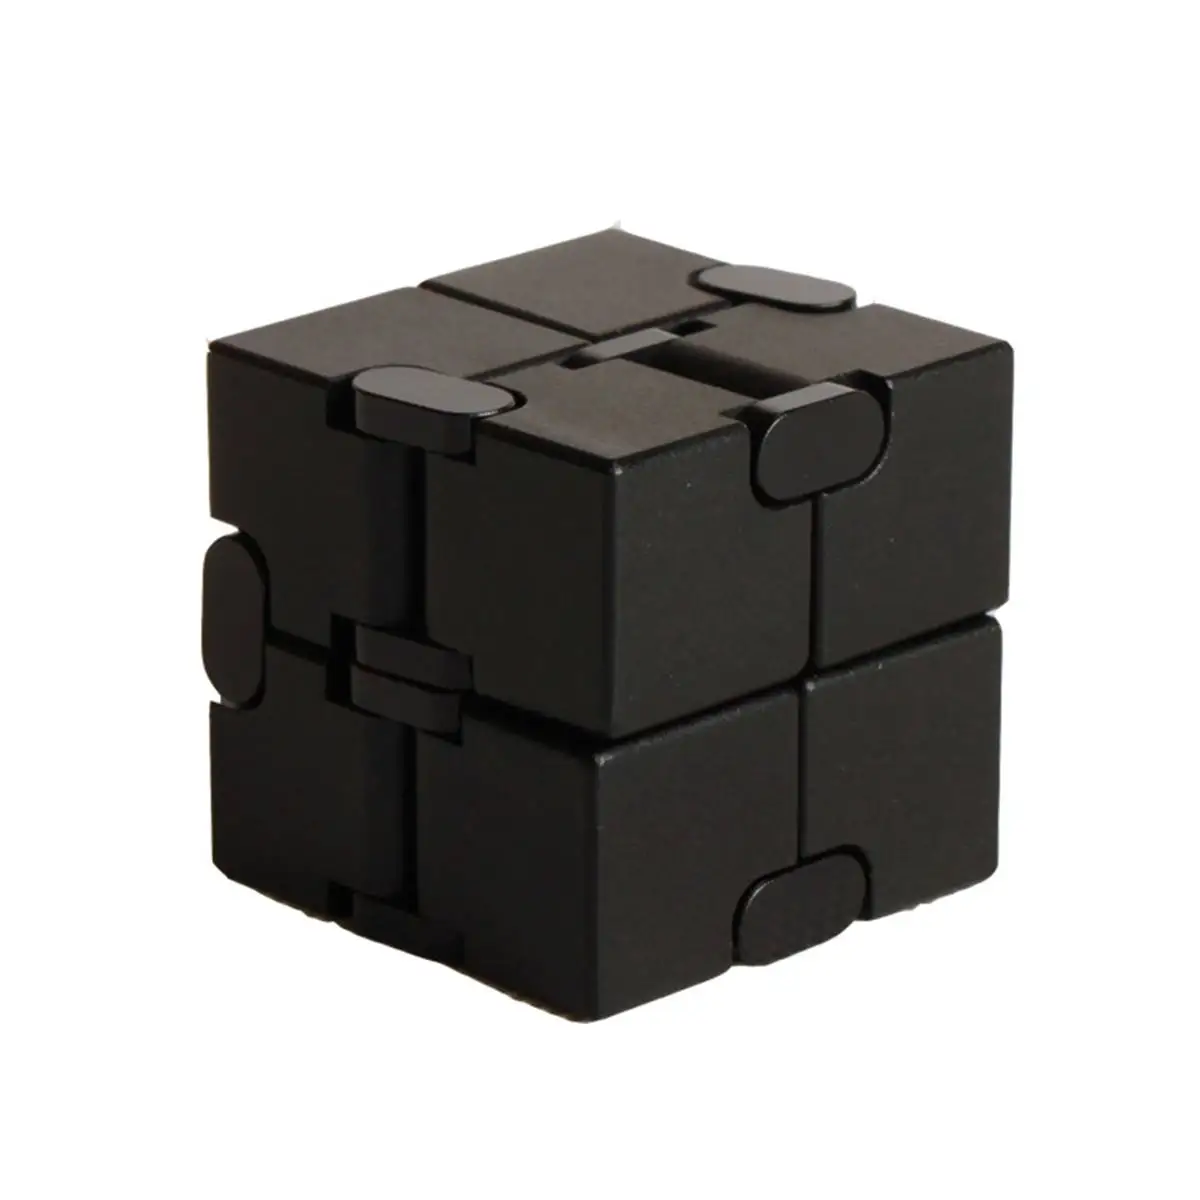 Обновленная версия мини-кубик Infinit для снятия стресса и стресса, Магический кубик, игрушка, Забавный кубик, головоломка, расслабляющая игрушка для взрослых и детей - Цвет: Черный